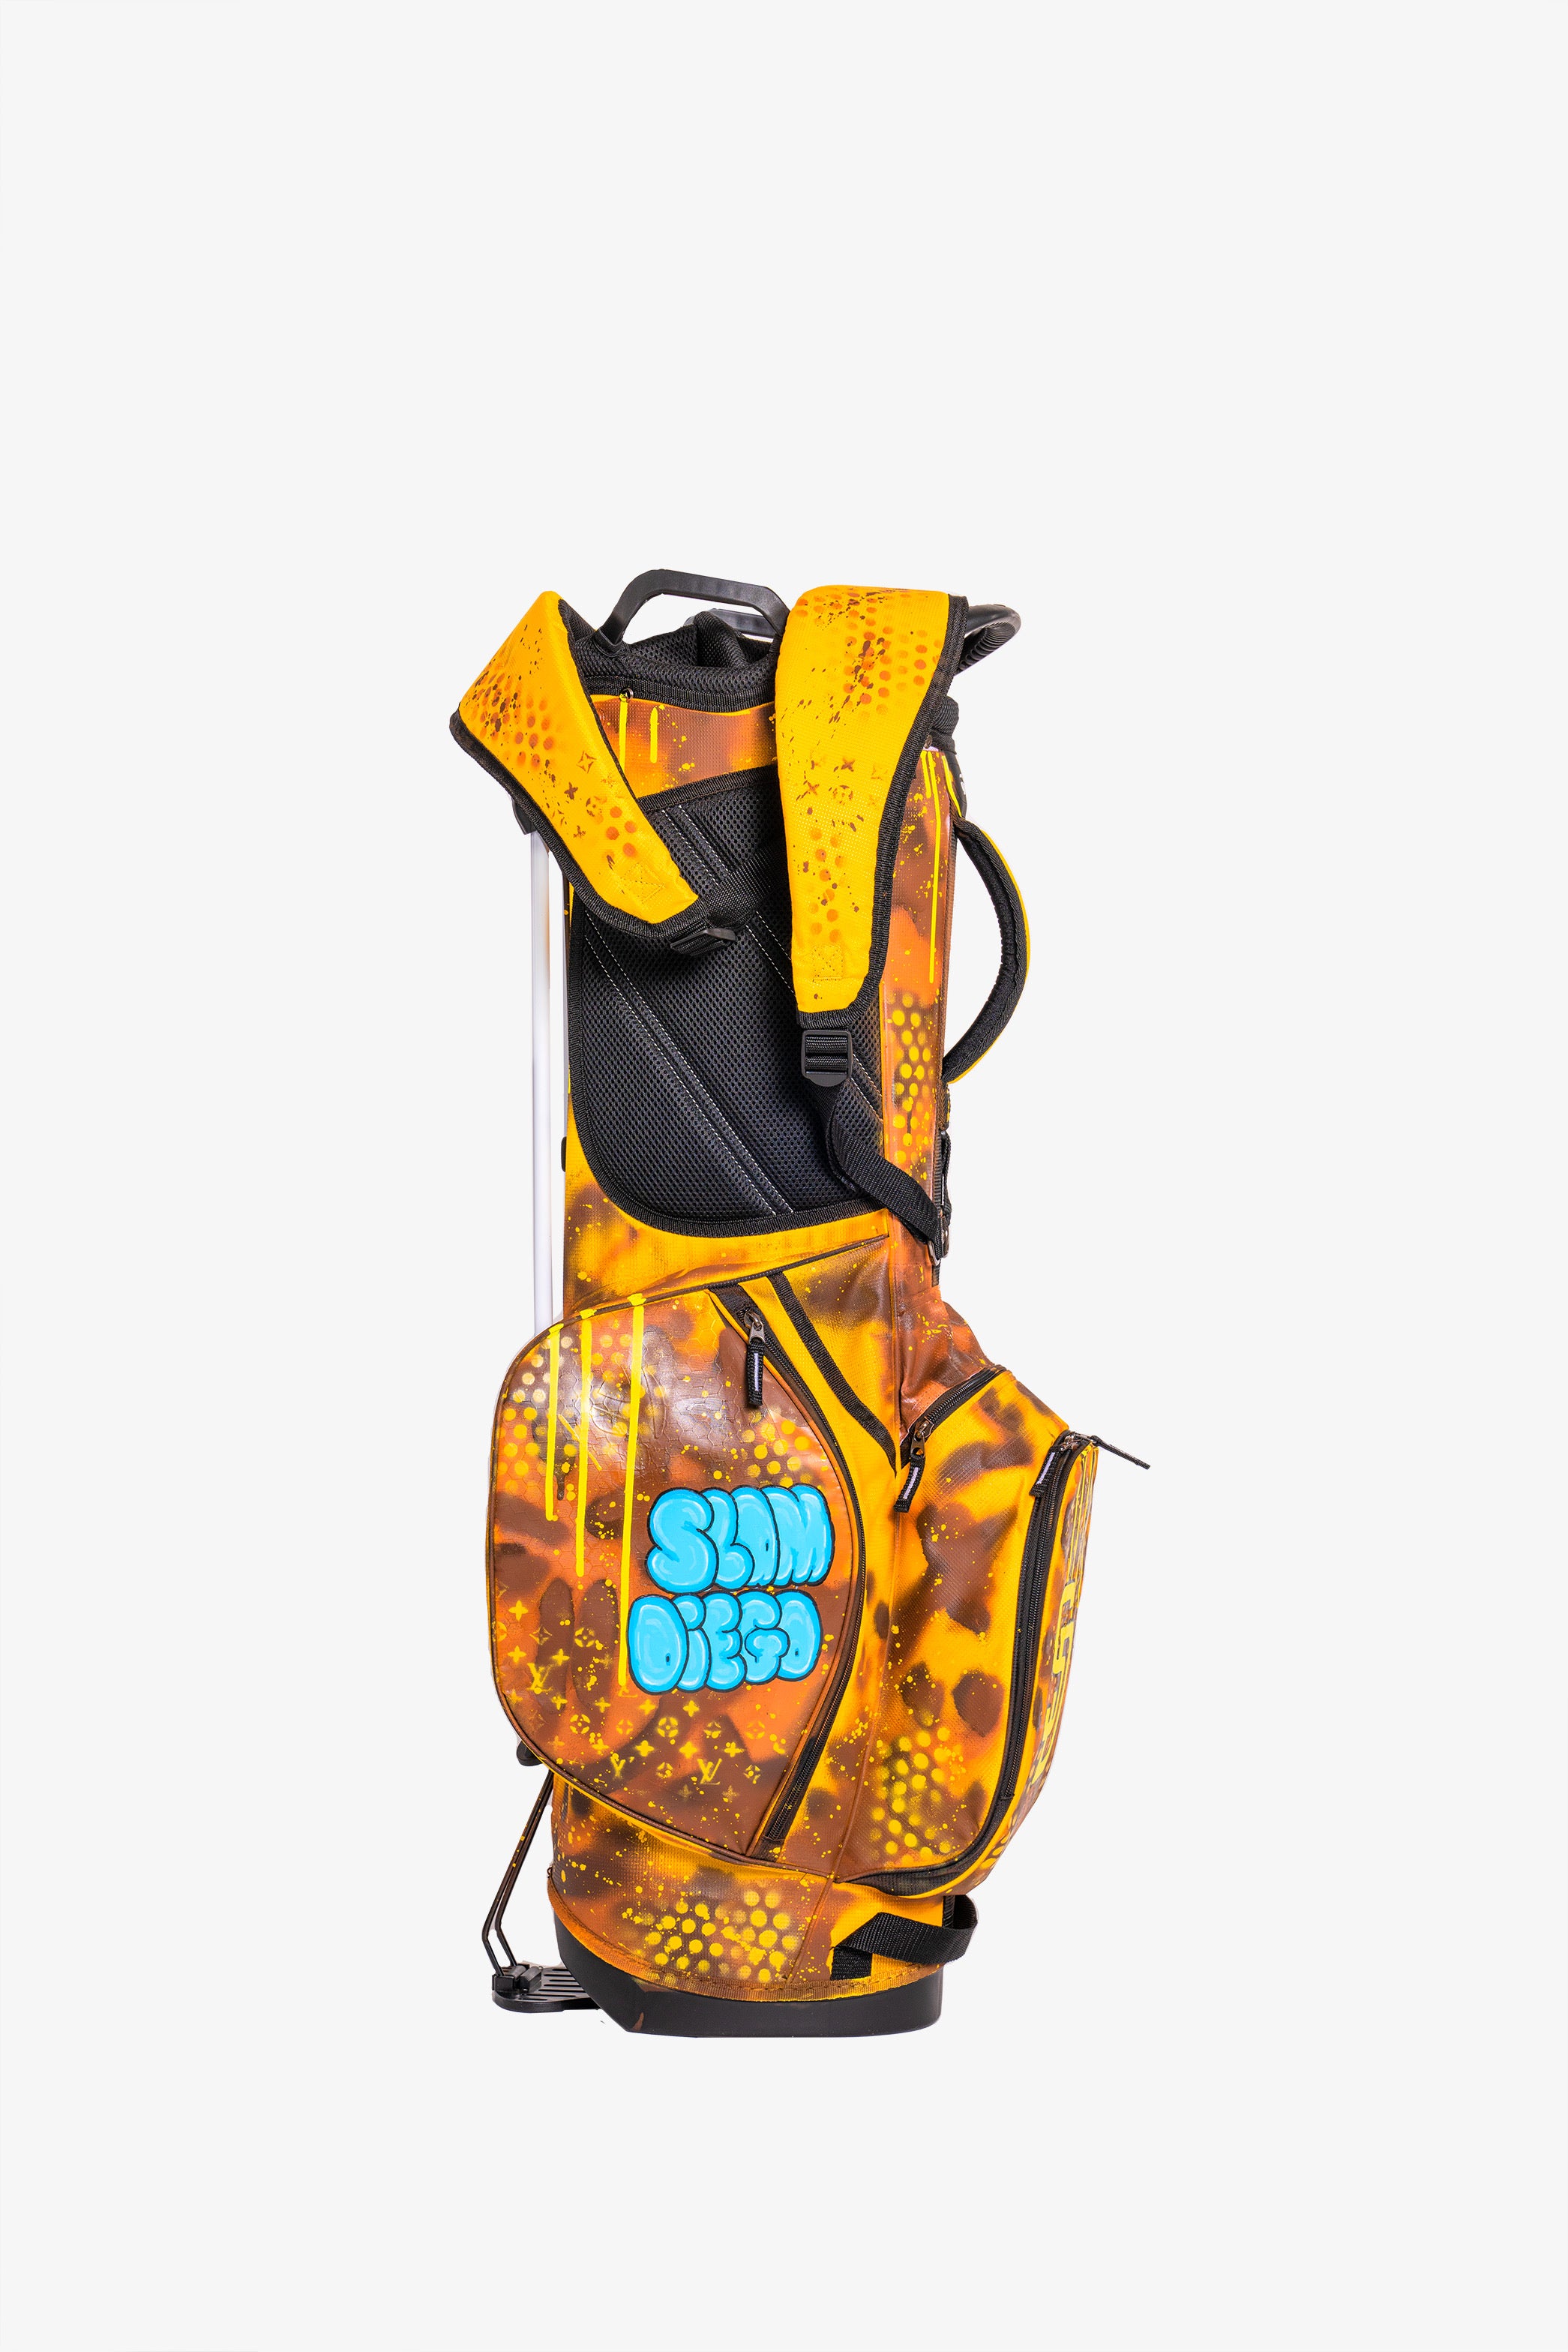 Banpresto edición limitada de 2014 Modelo De Dragon Ball Z Goku Caddie  Bolsa 25728 oNV  Golf bags for sale Golf bags Dragon ball z